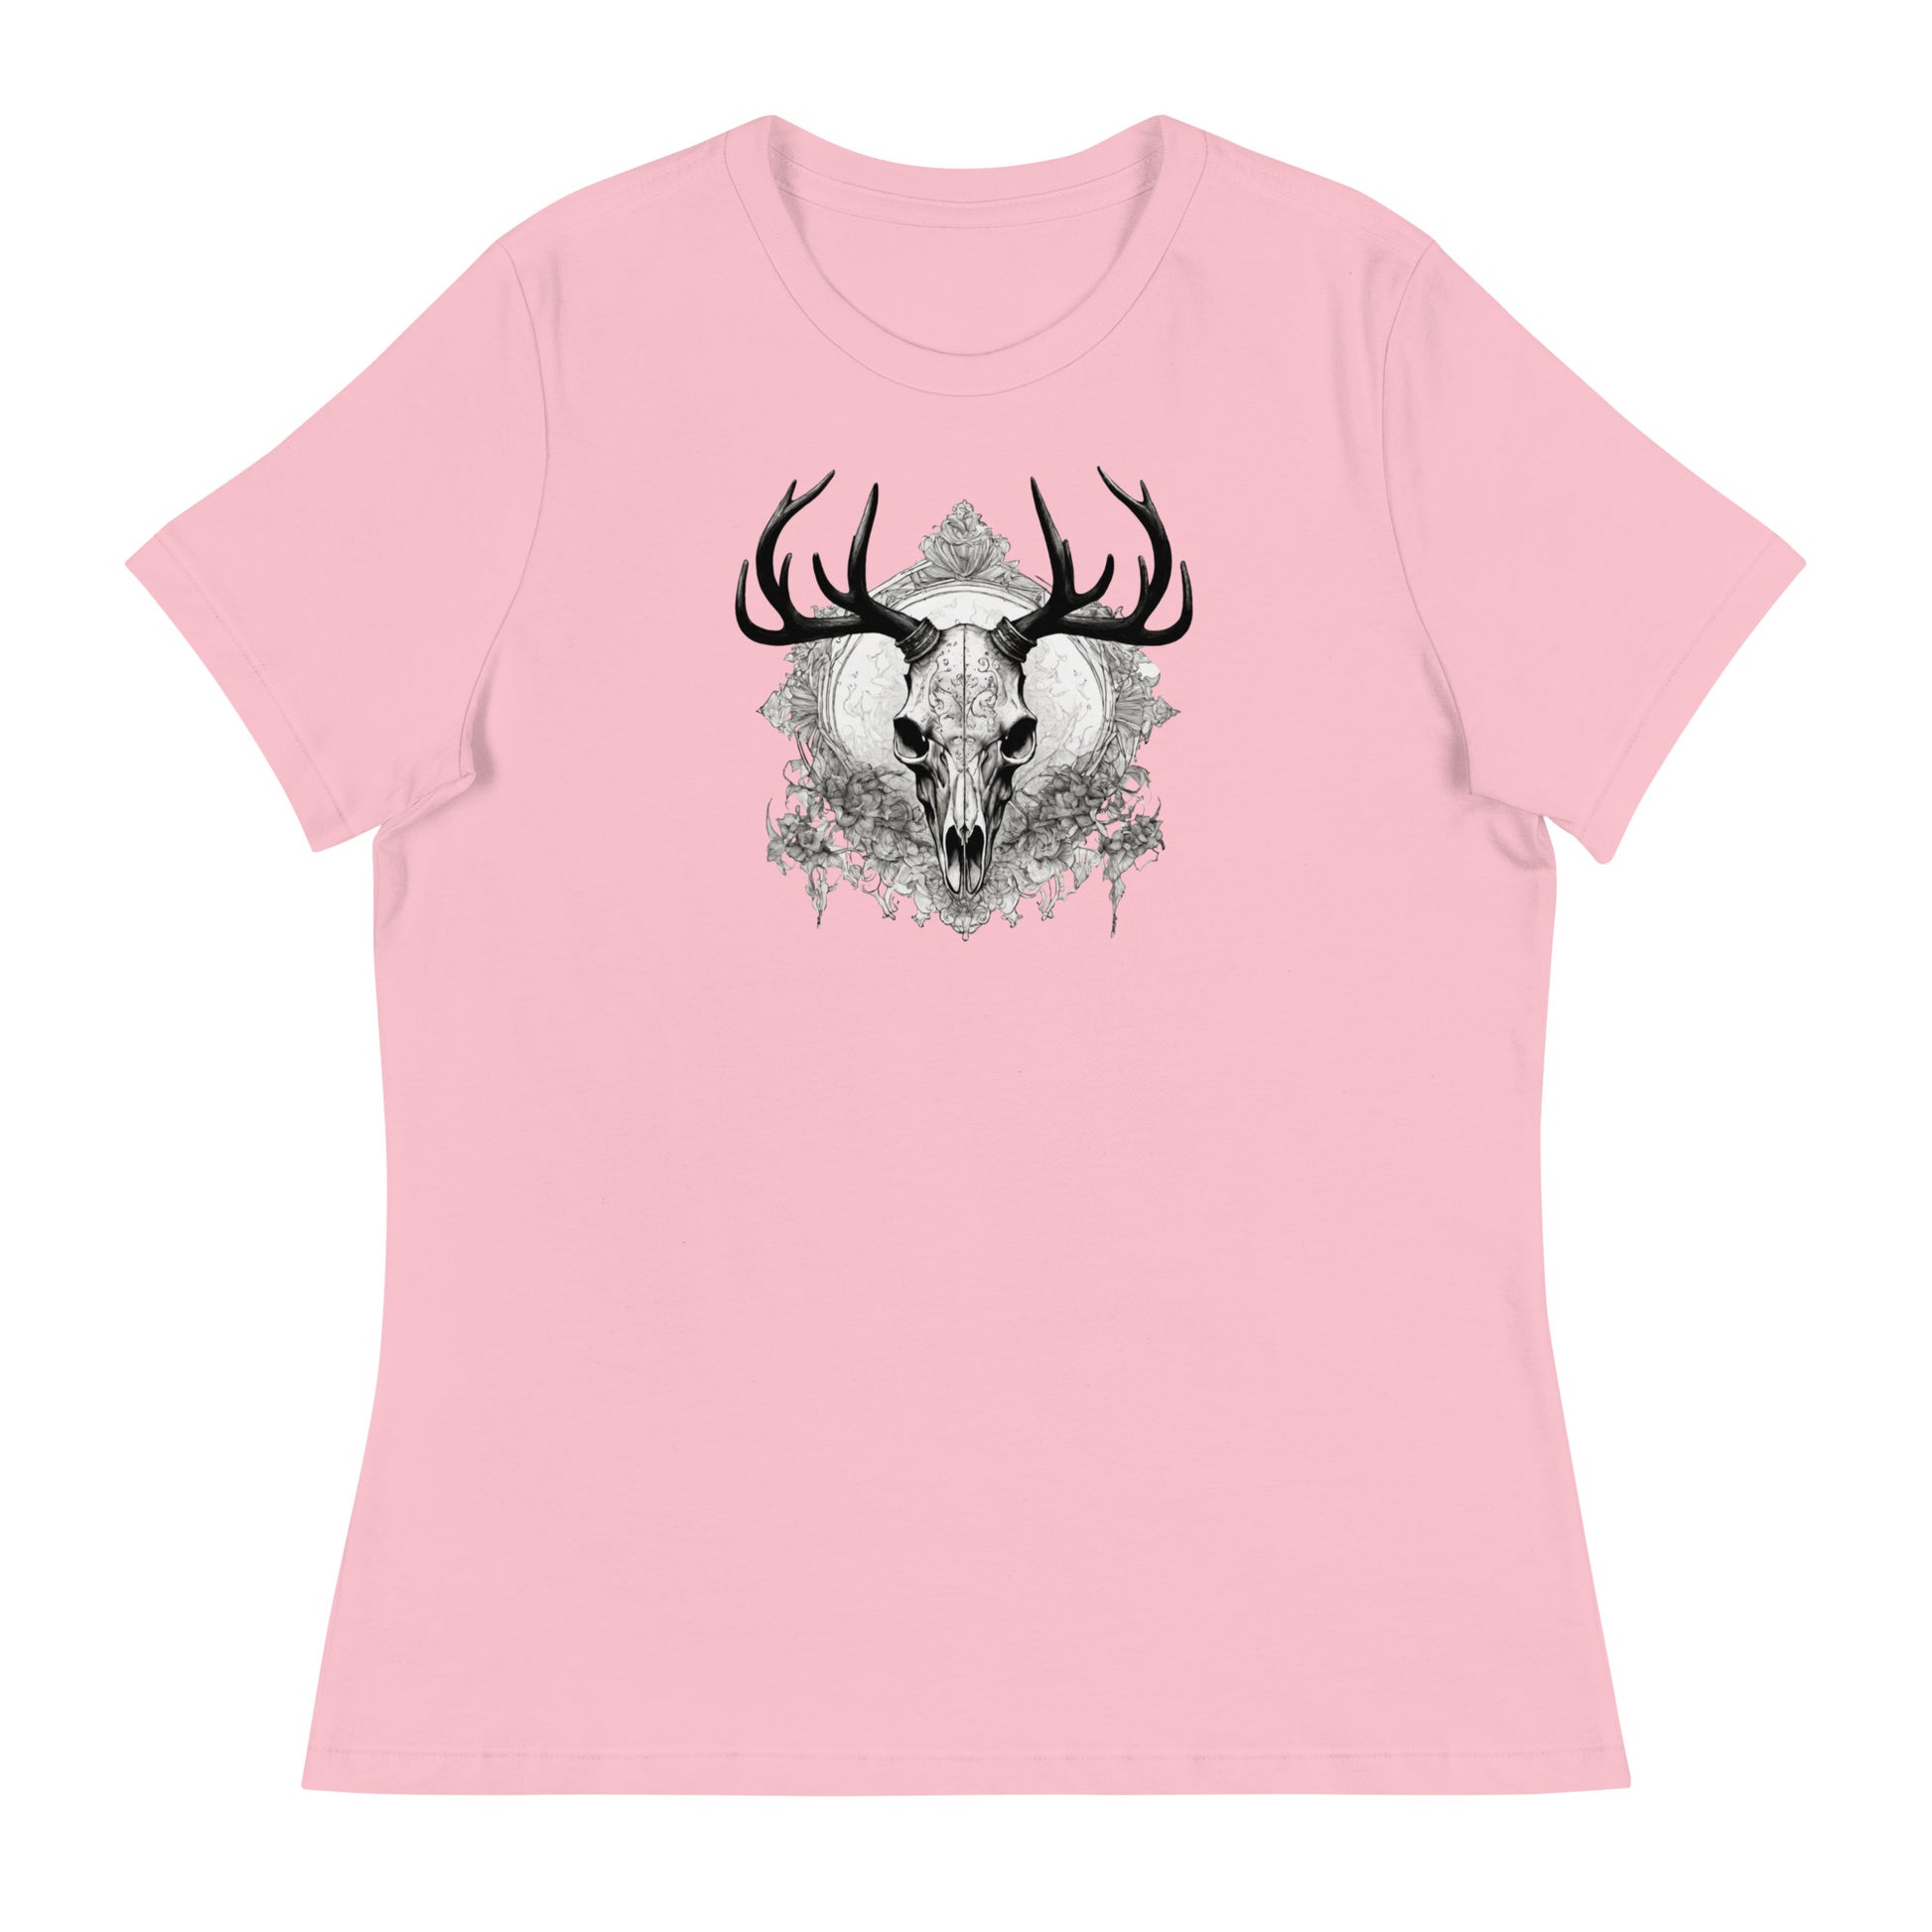 Decorative Deer Skull Women's T-Shirt Pink